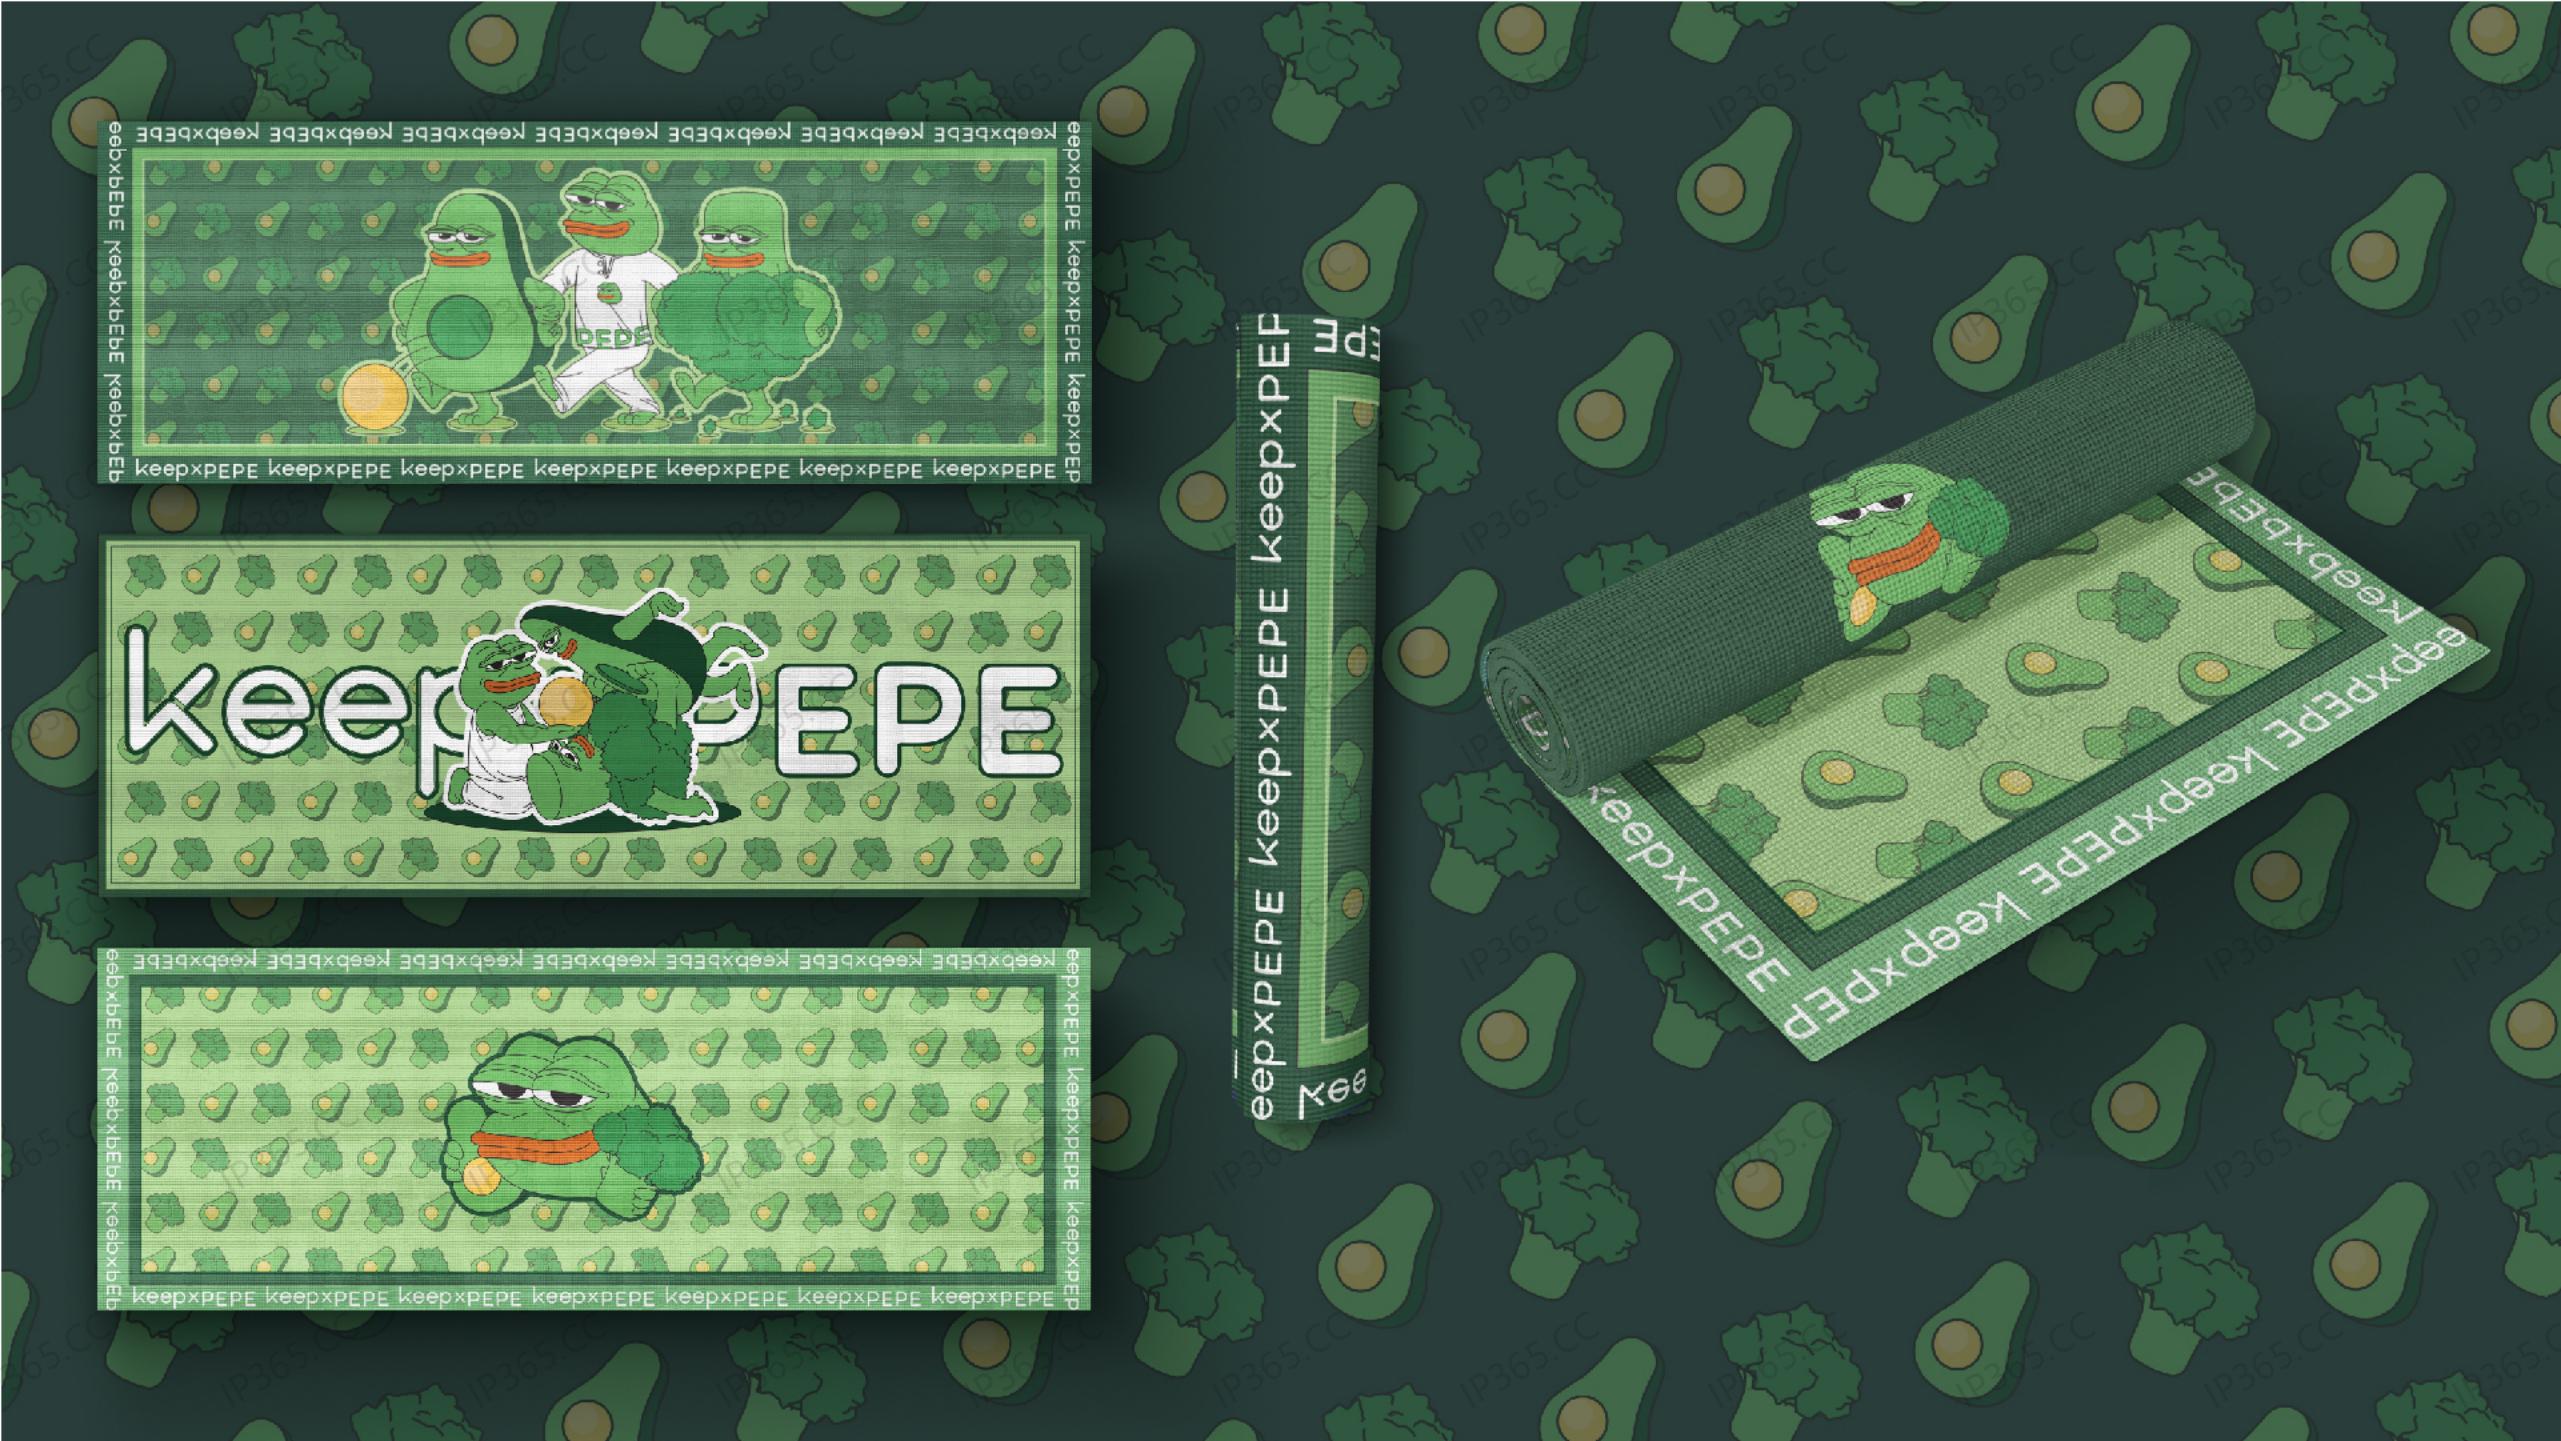 悲伤蛙PEPE 2020合作宣传手册_27.jpg